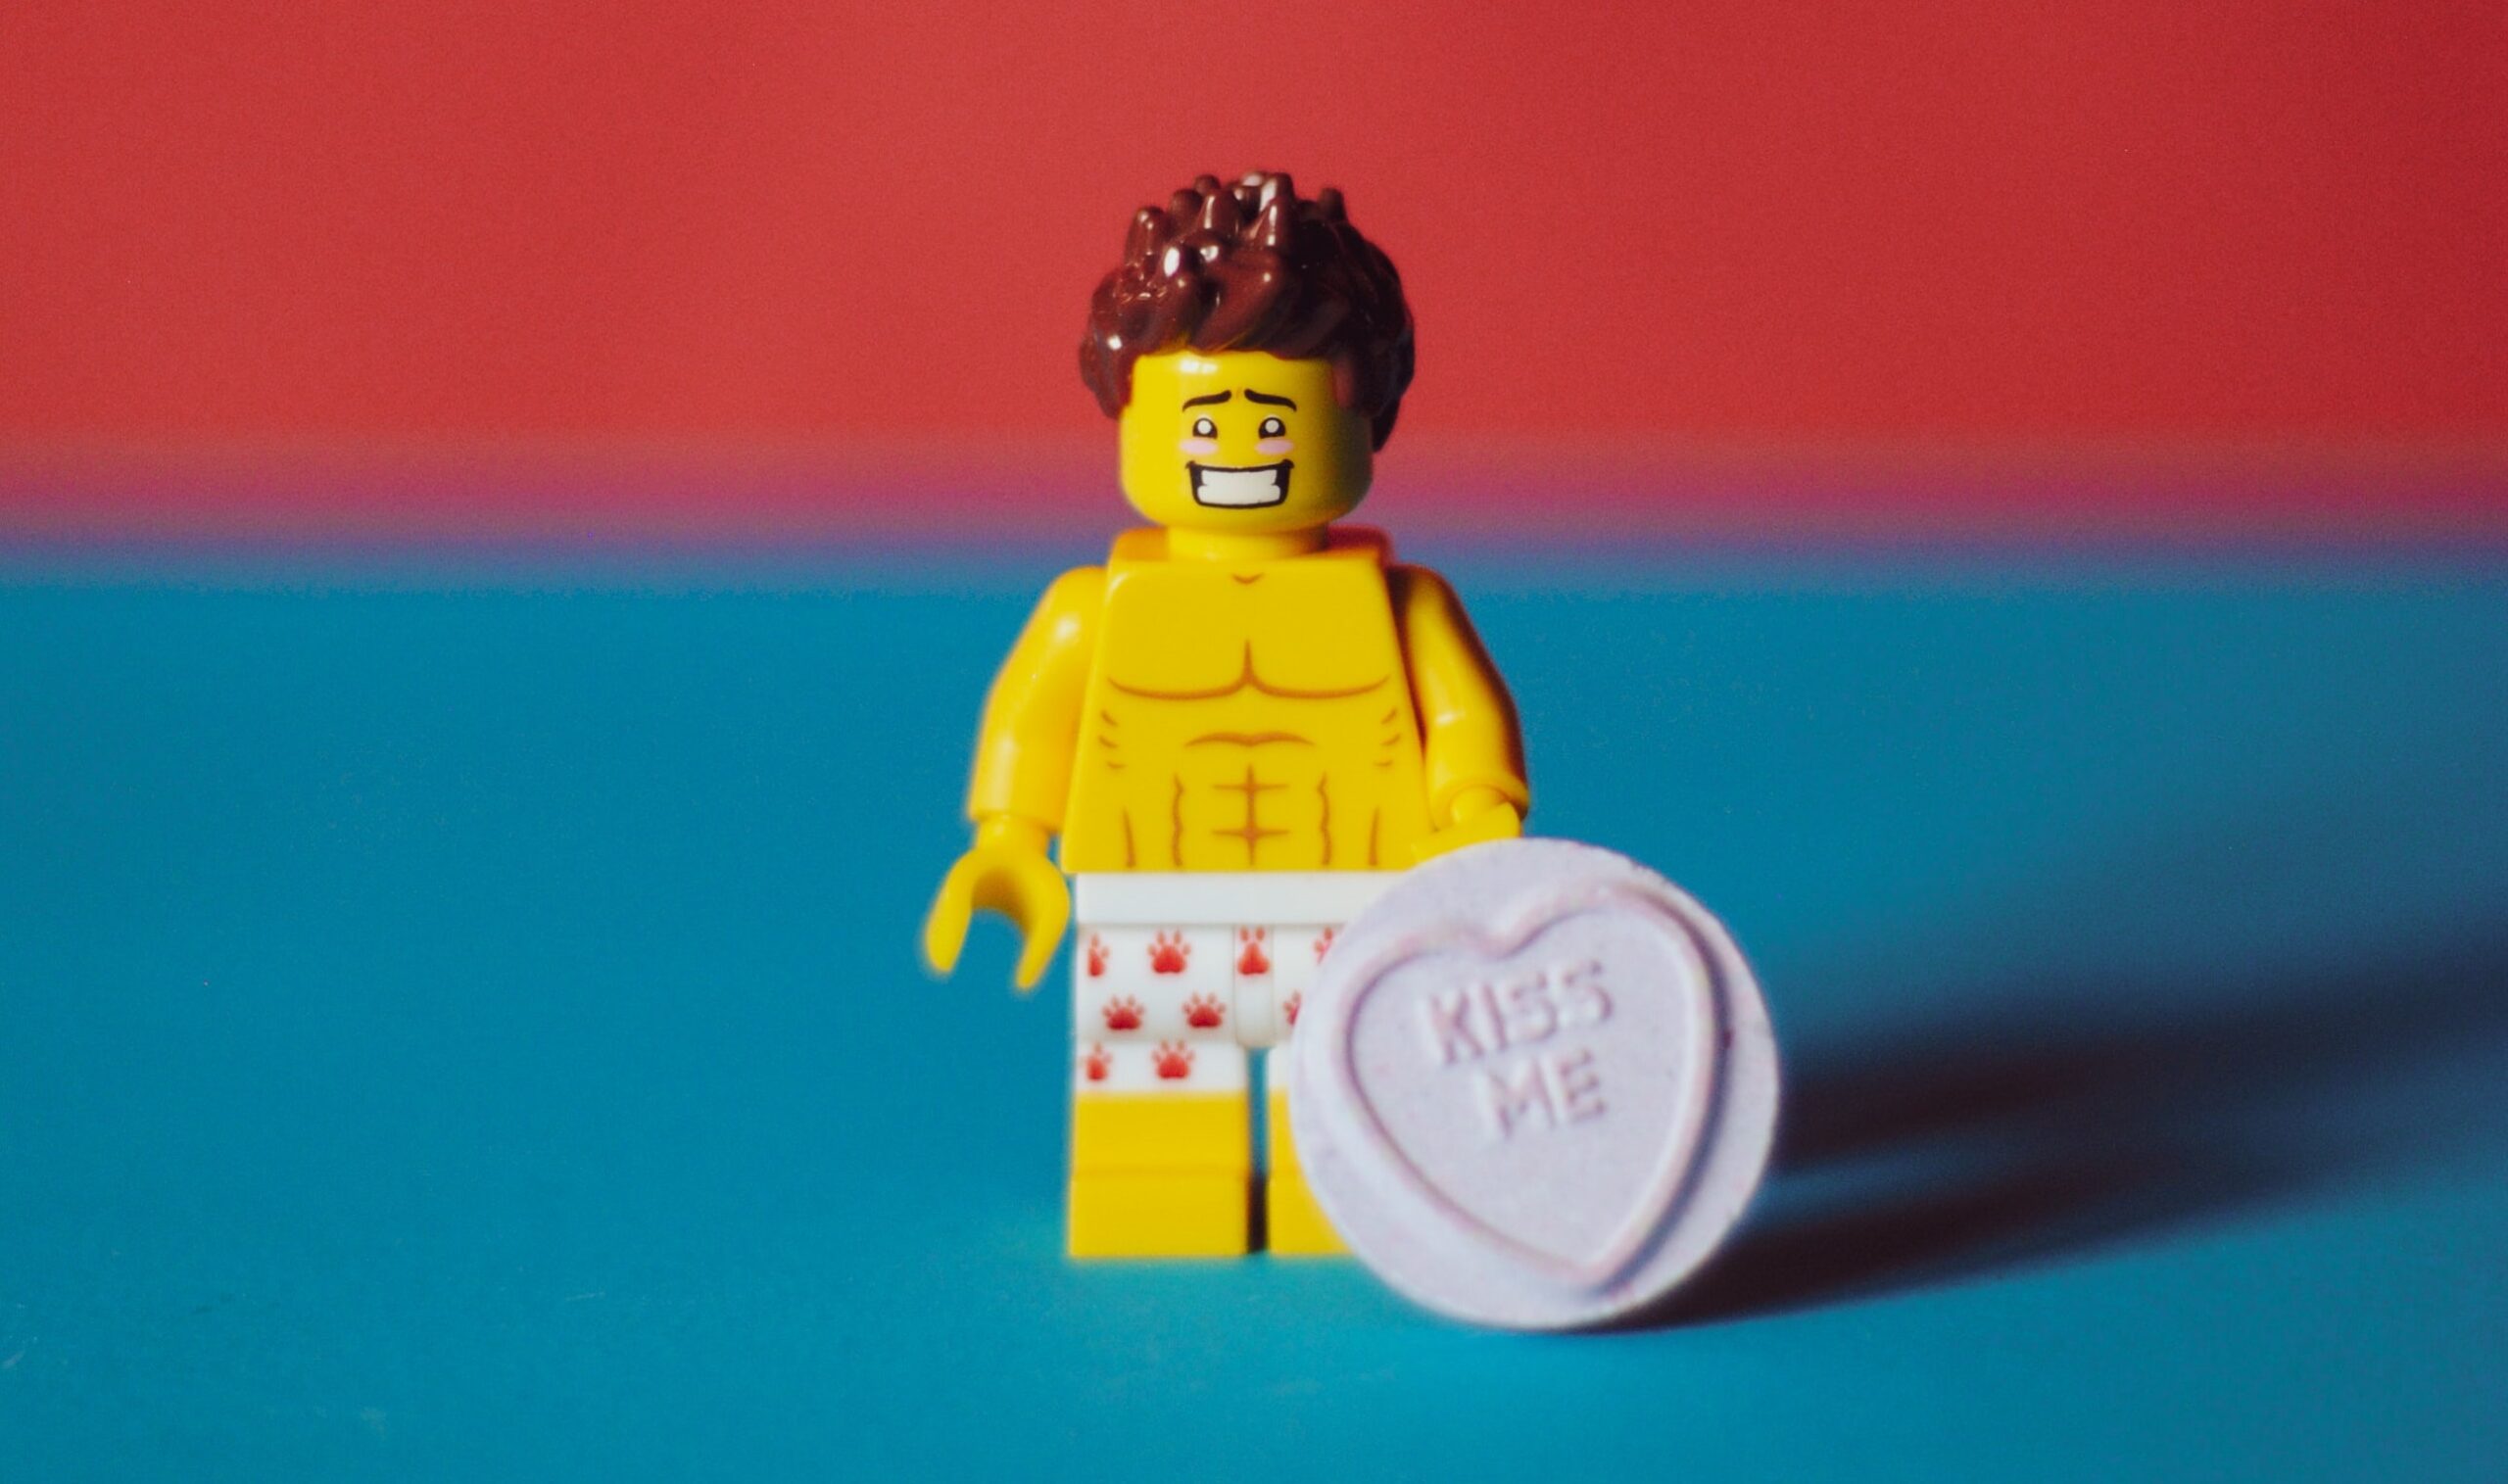 Legofigur mit Waschbrettbauch und Kiss me Herz